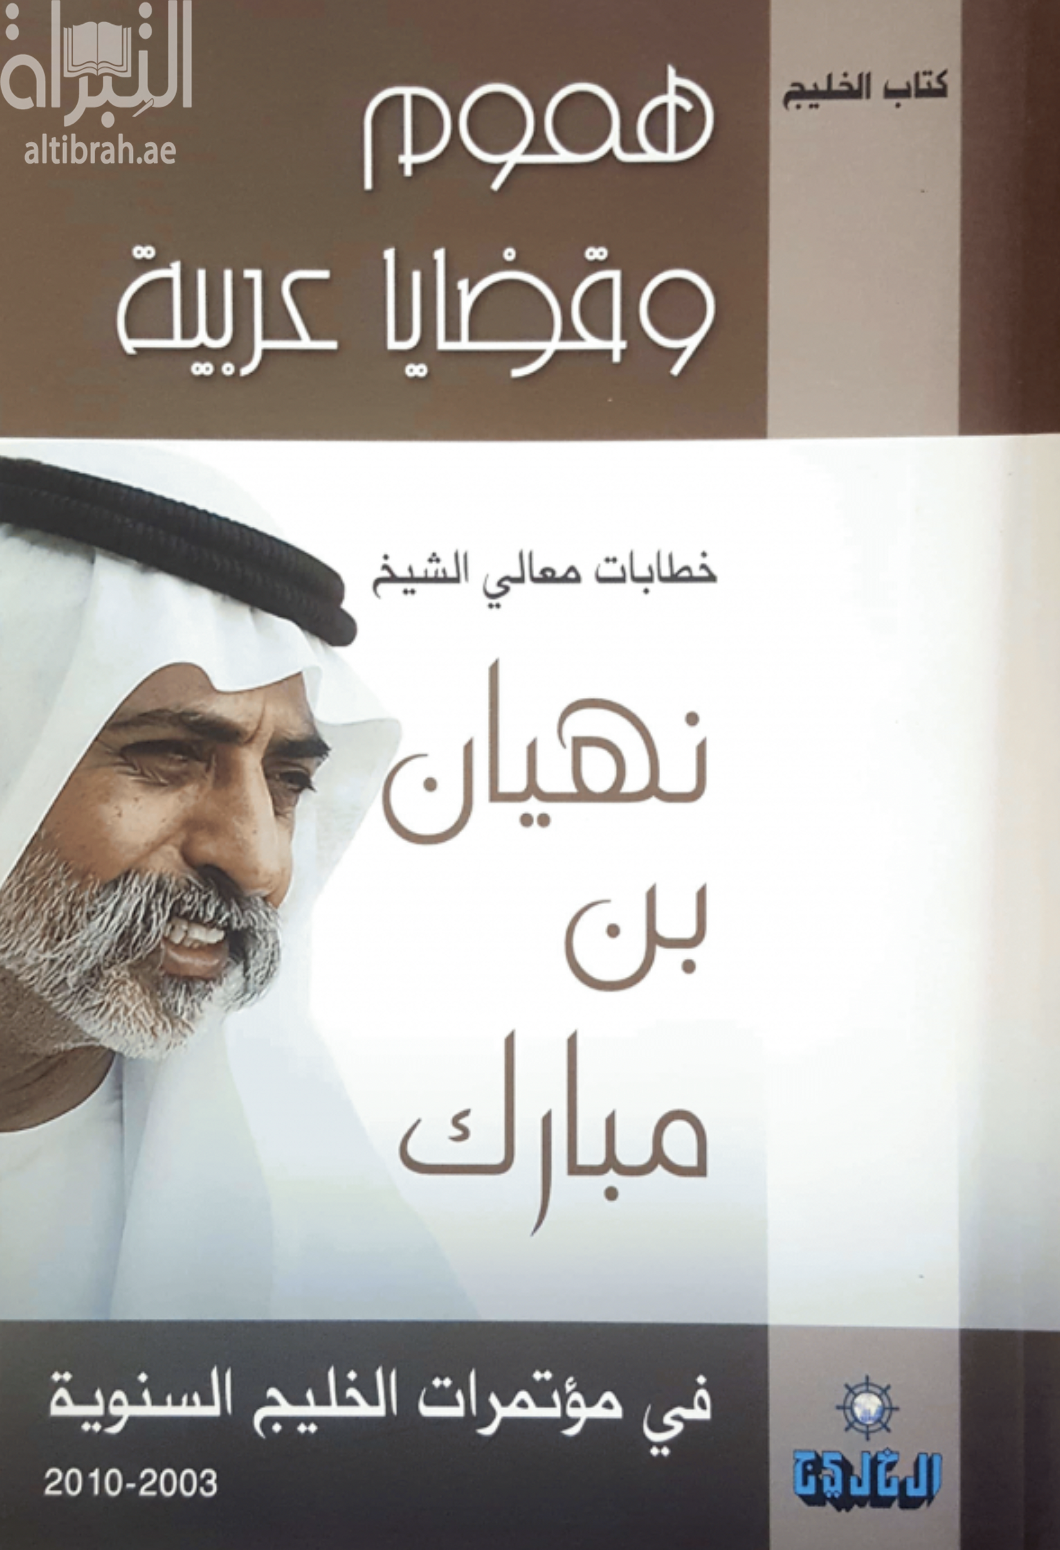 هموم وقضايا عربية : خطابات معالي الشيخ نهيان بن مبارك في مؤتمرات الخليج السنوية 2003 - 2010